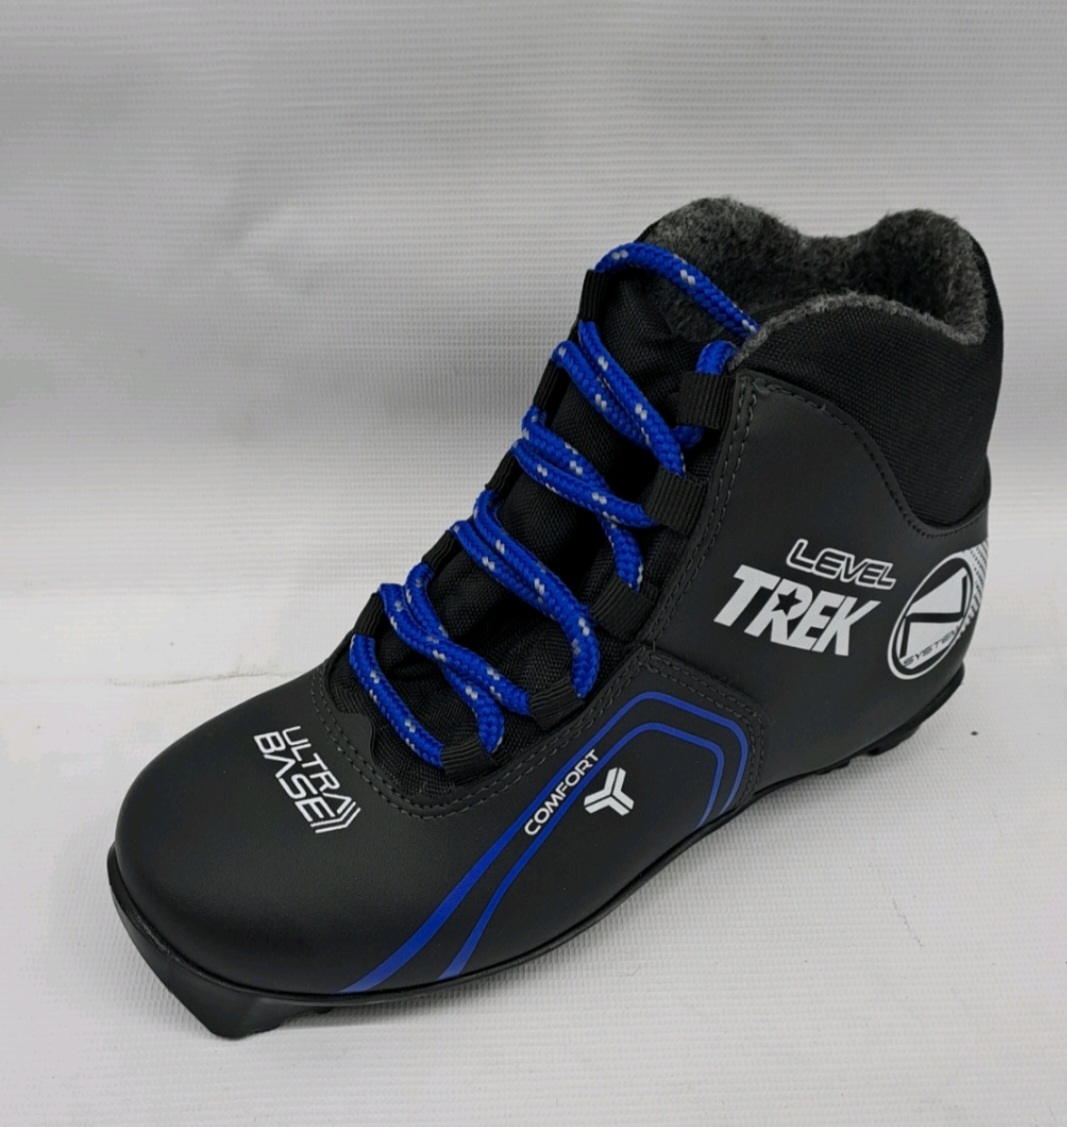 Ботинки лыжные TREK Level 3 черный лого синий RU35, EU36, CM22,5                                           